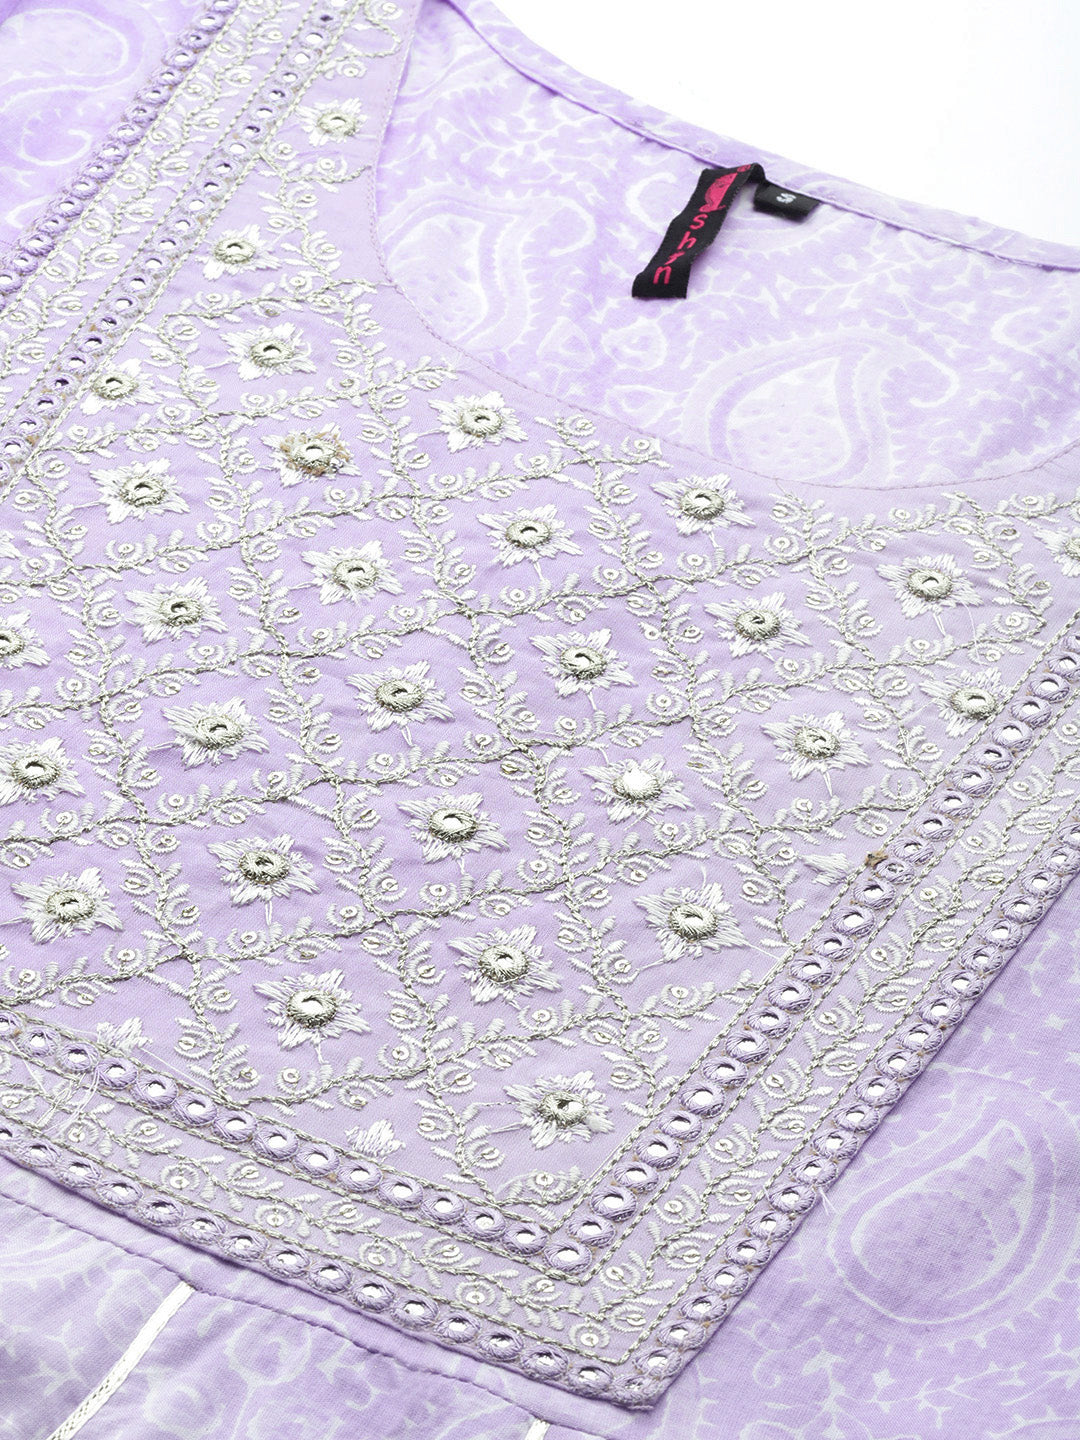 Ishin Women's Cotton Lavender Embroidered Anarkali Kurta